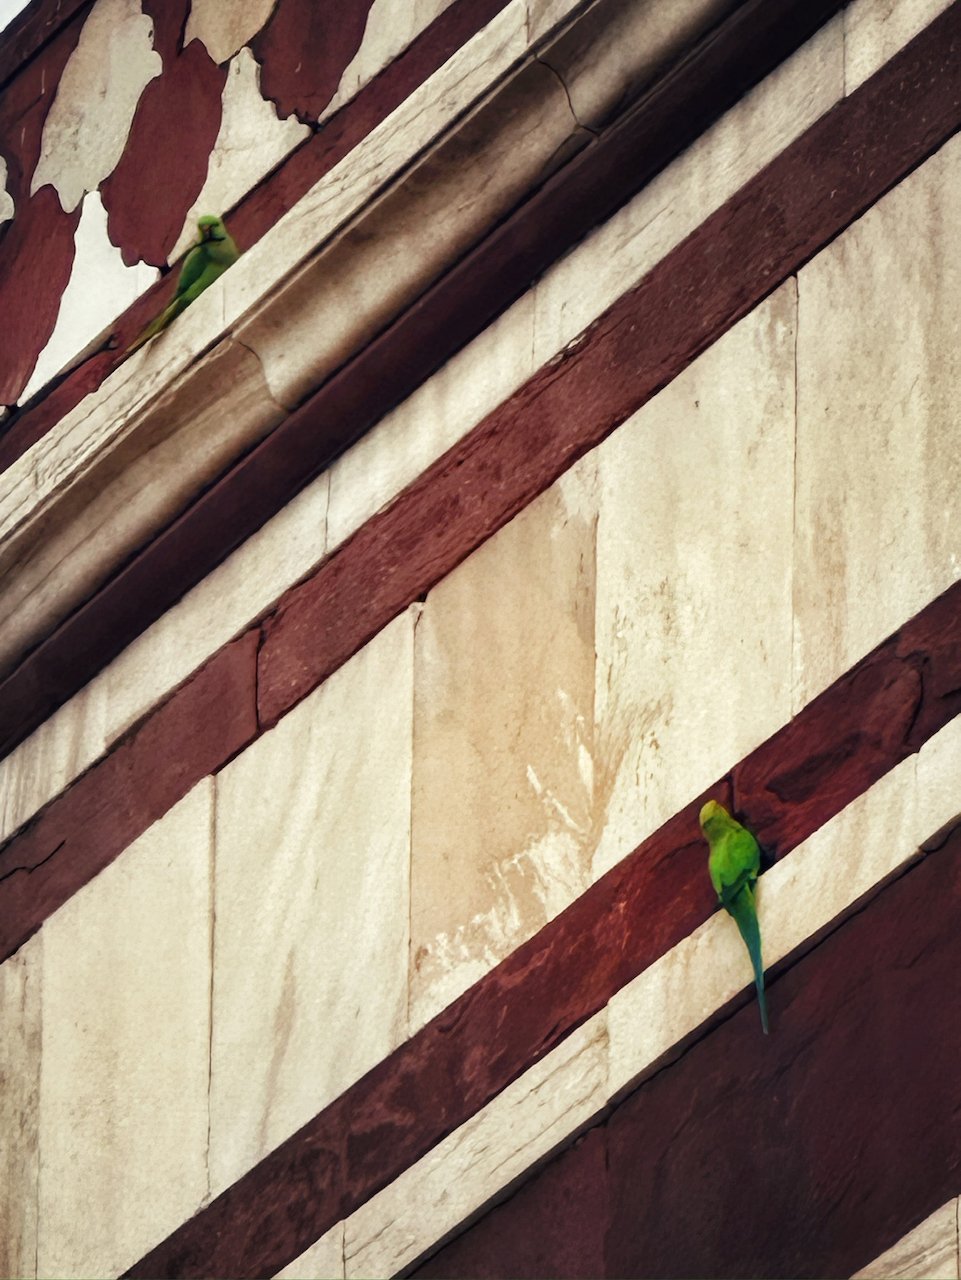 humayun tomb green parrots.jpeg